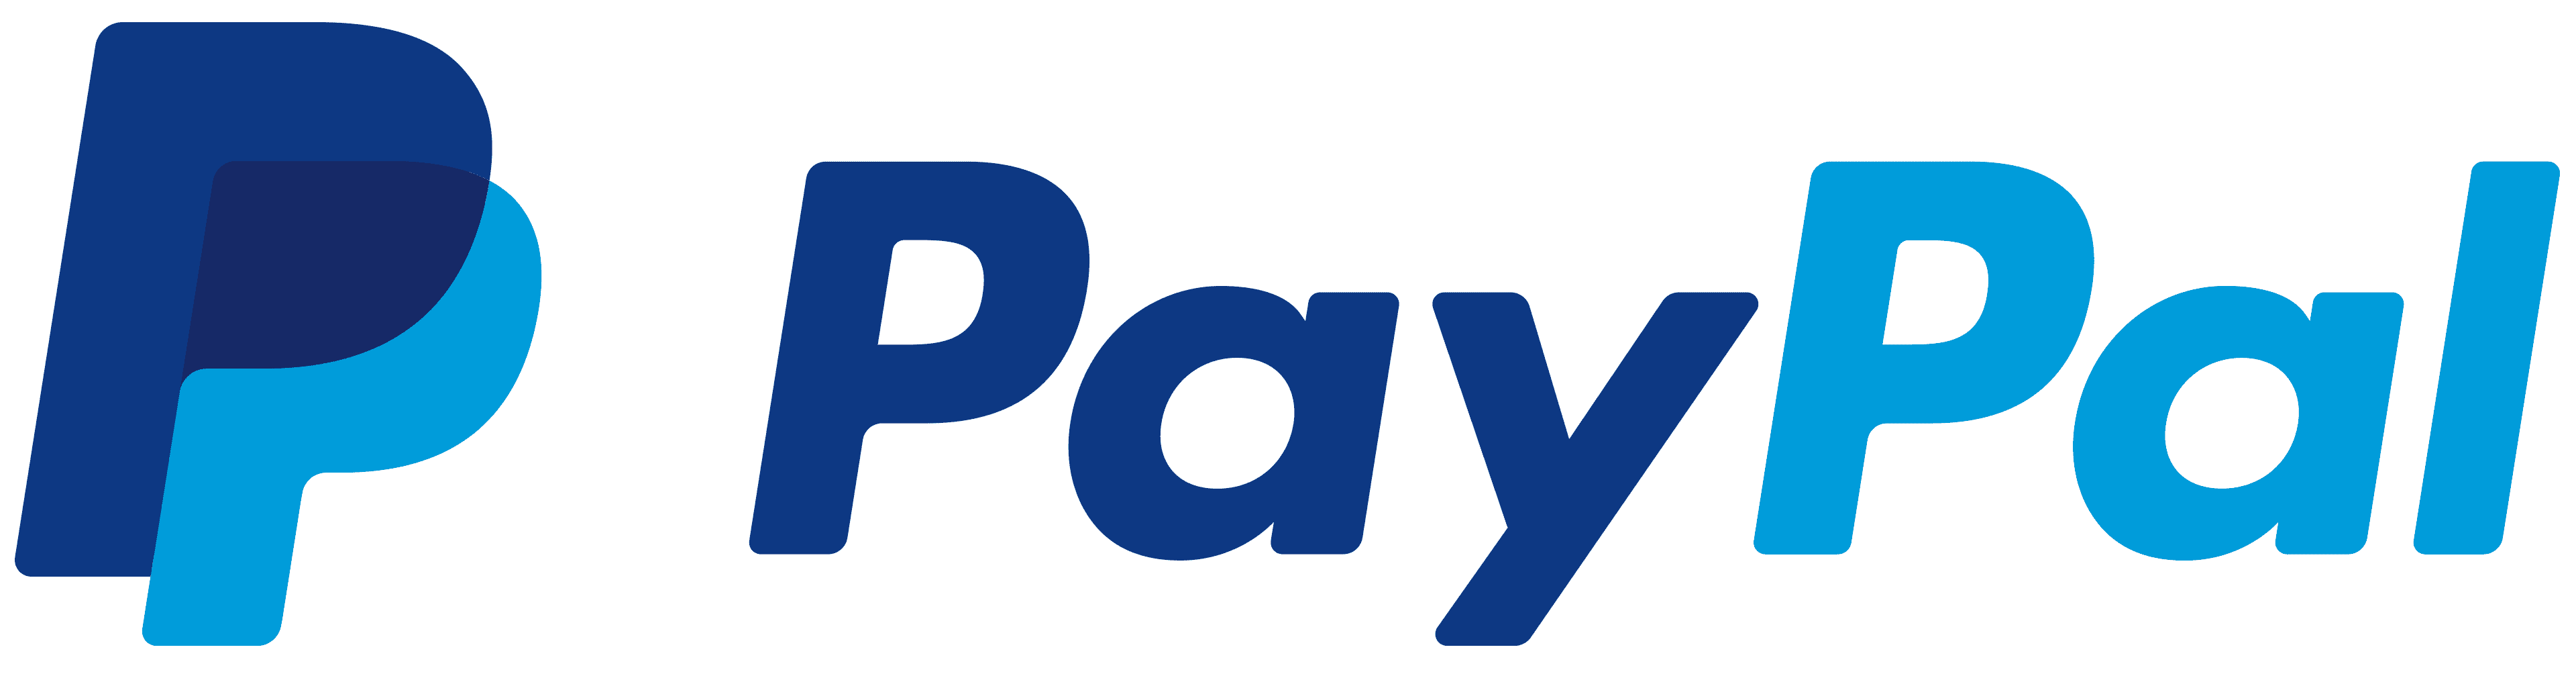 Paypal logo e